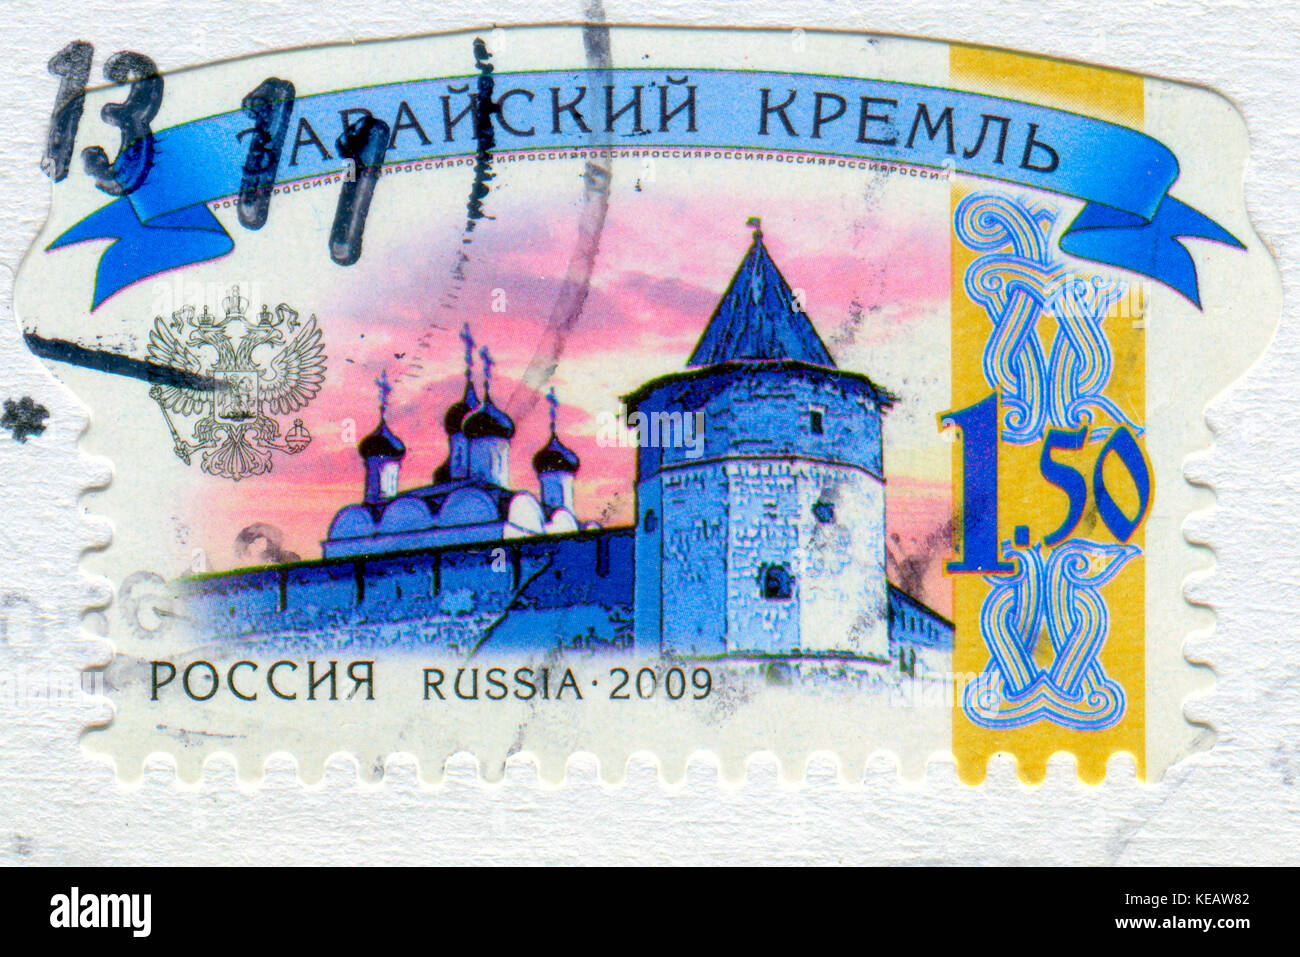 Gomel, Bélarus, 13 octobre 2017, de timbres en Russie montre l'image de zaraisk kremlin, vers 2009. Banque D'Images